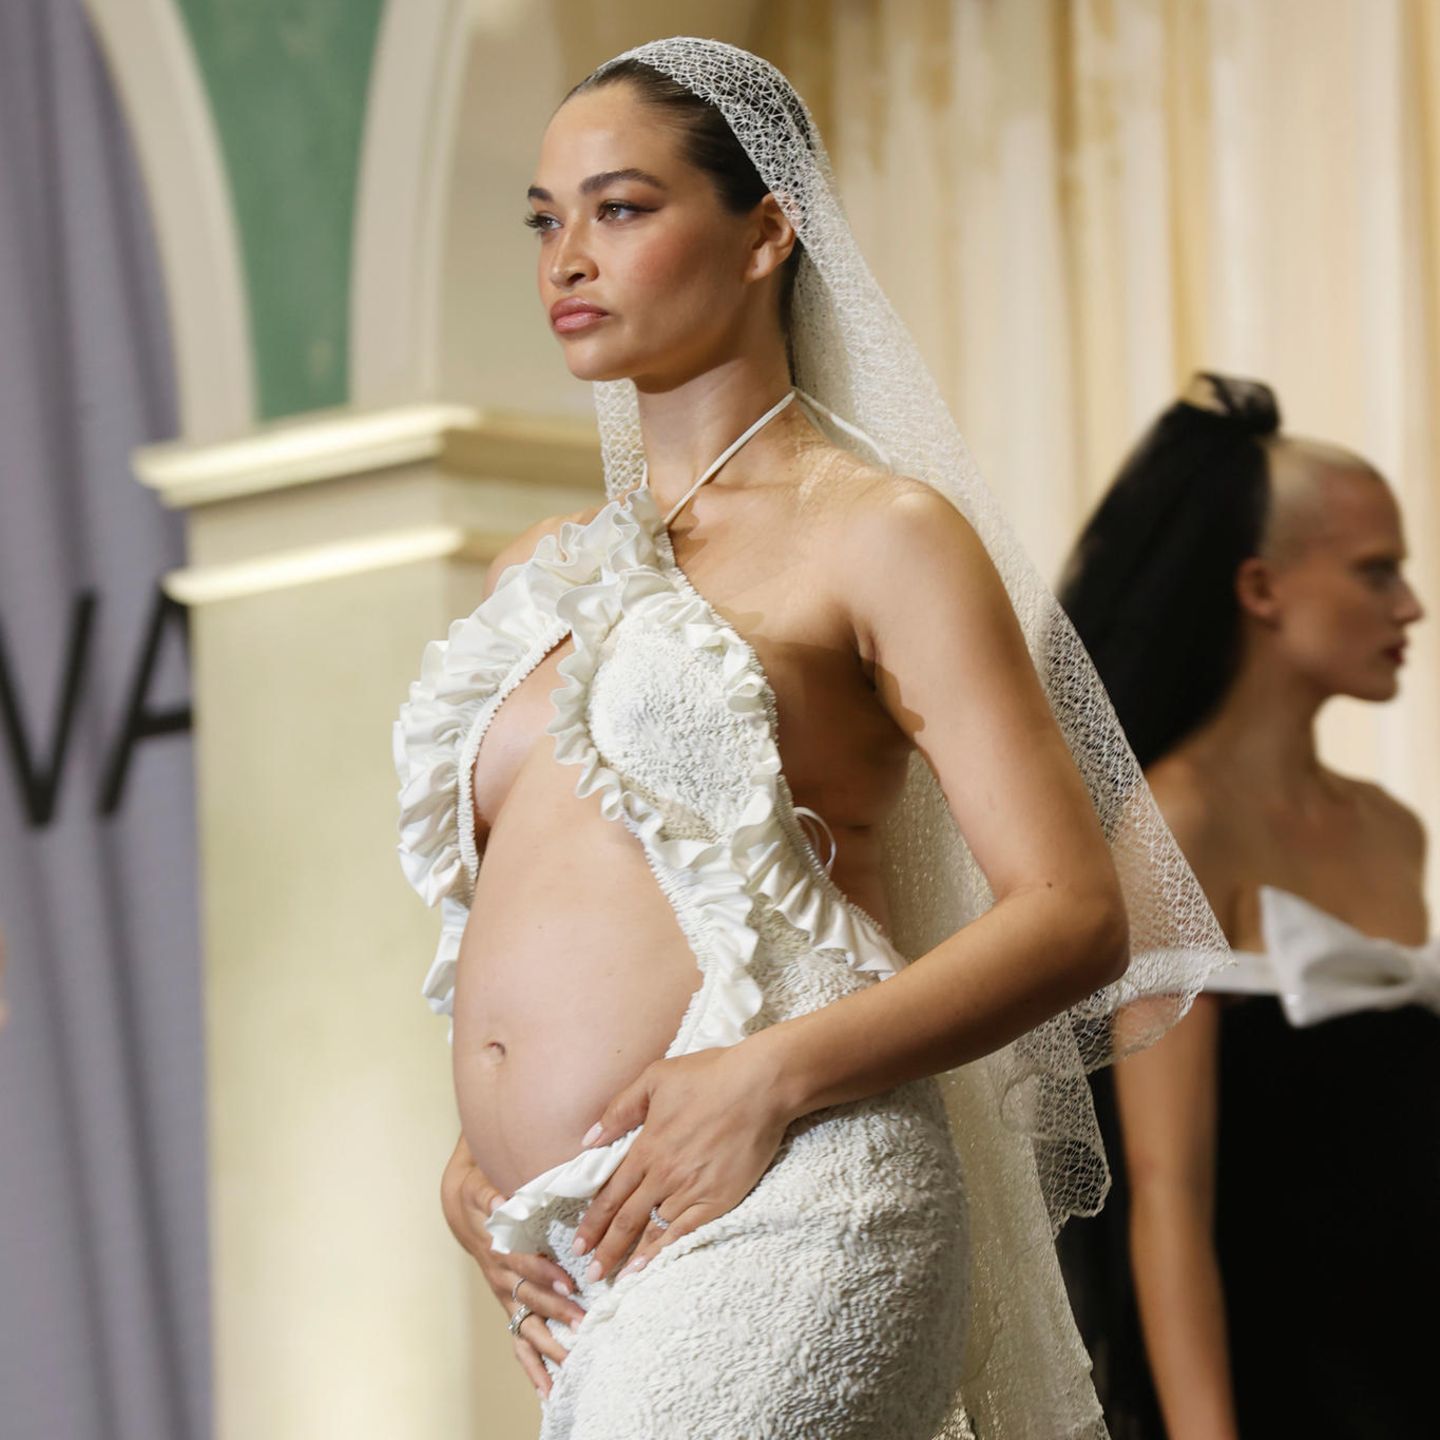 Auf dem Laufsteg der amfAR-Gala 2022 zeigt sich Model Shanina Shaik nicht nur in einem besonderen Look, sondern präsentiert gleichzeitig ihren Babybauch. Die Cut-Outs des Kleides setzen ihn perfekt in Szene. Erst vor wenigen Wochen hat die Australierin ihre Schwangerschaft bekannt gegeben.